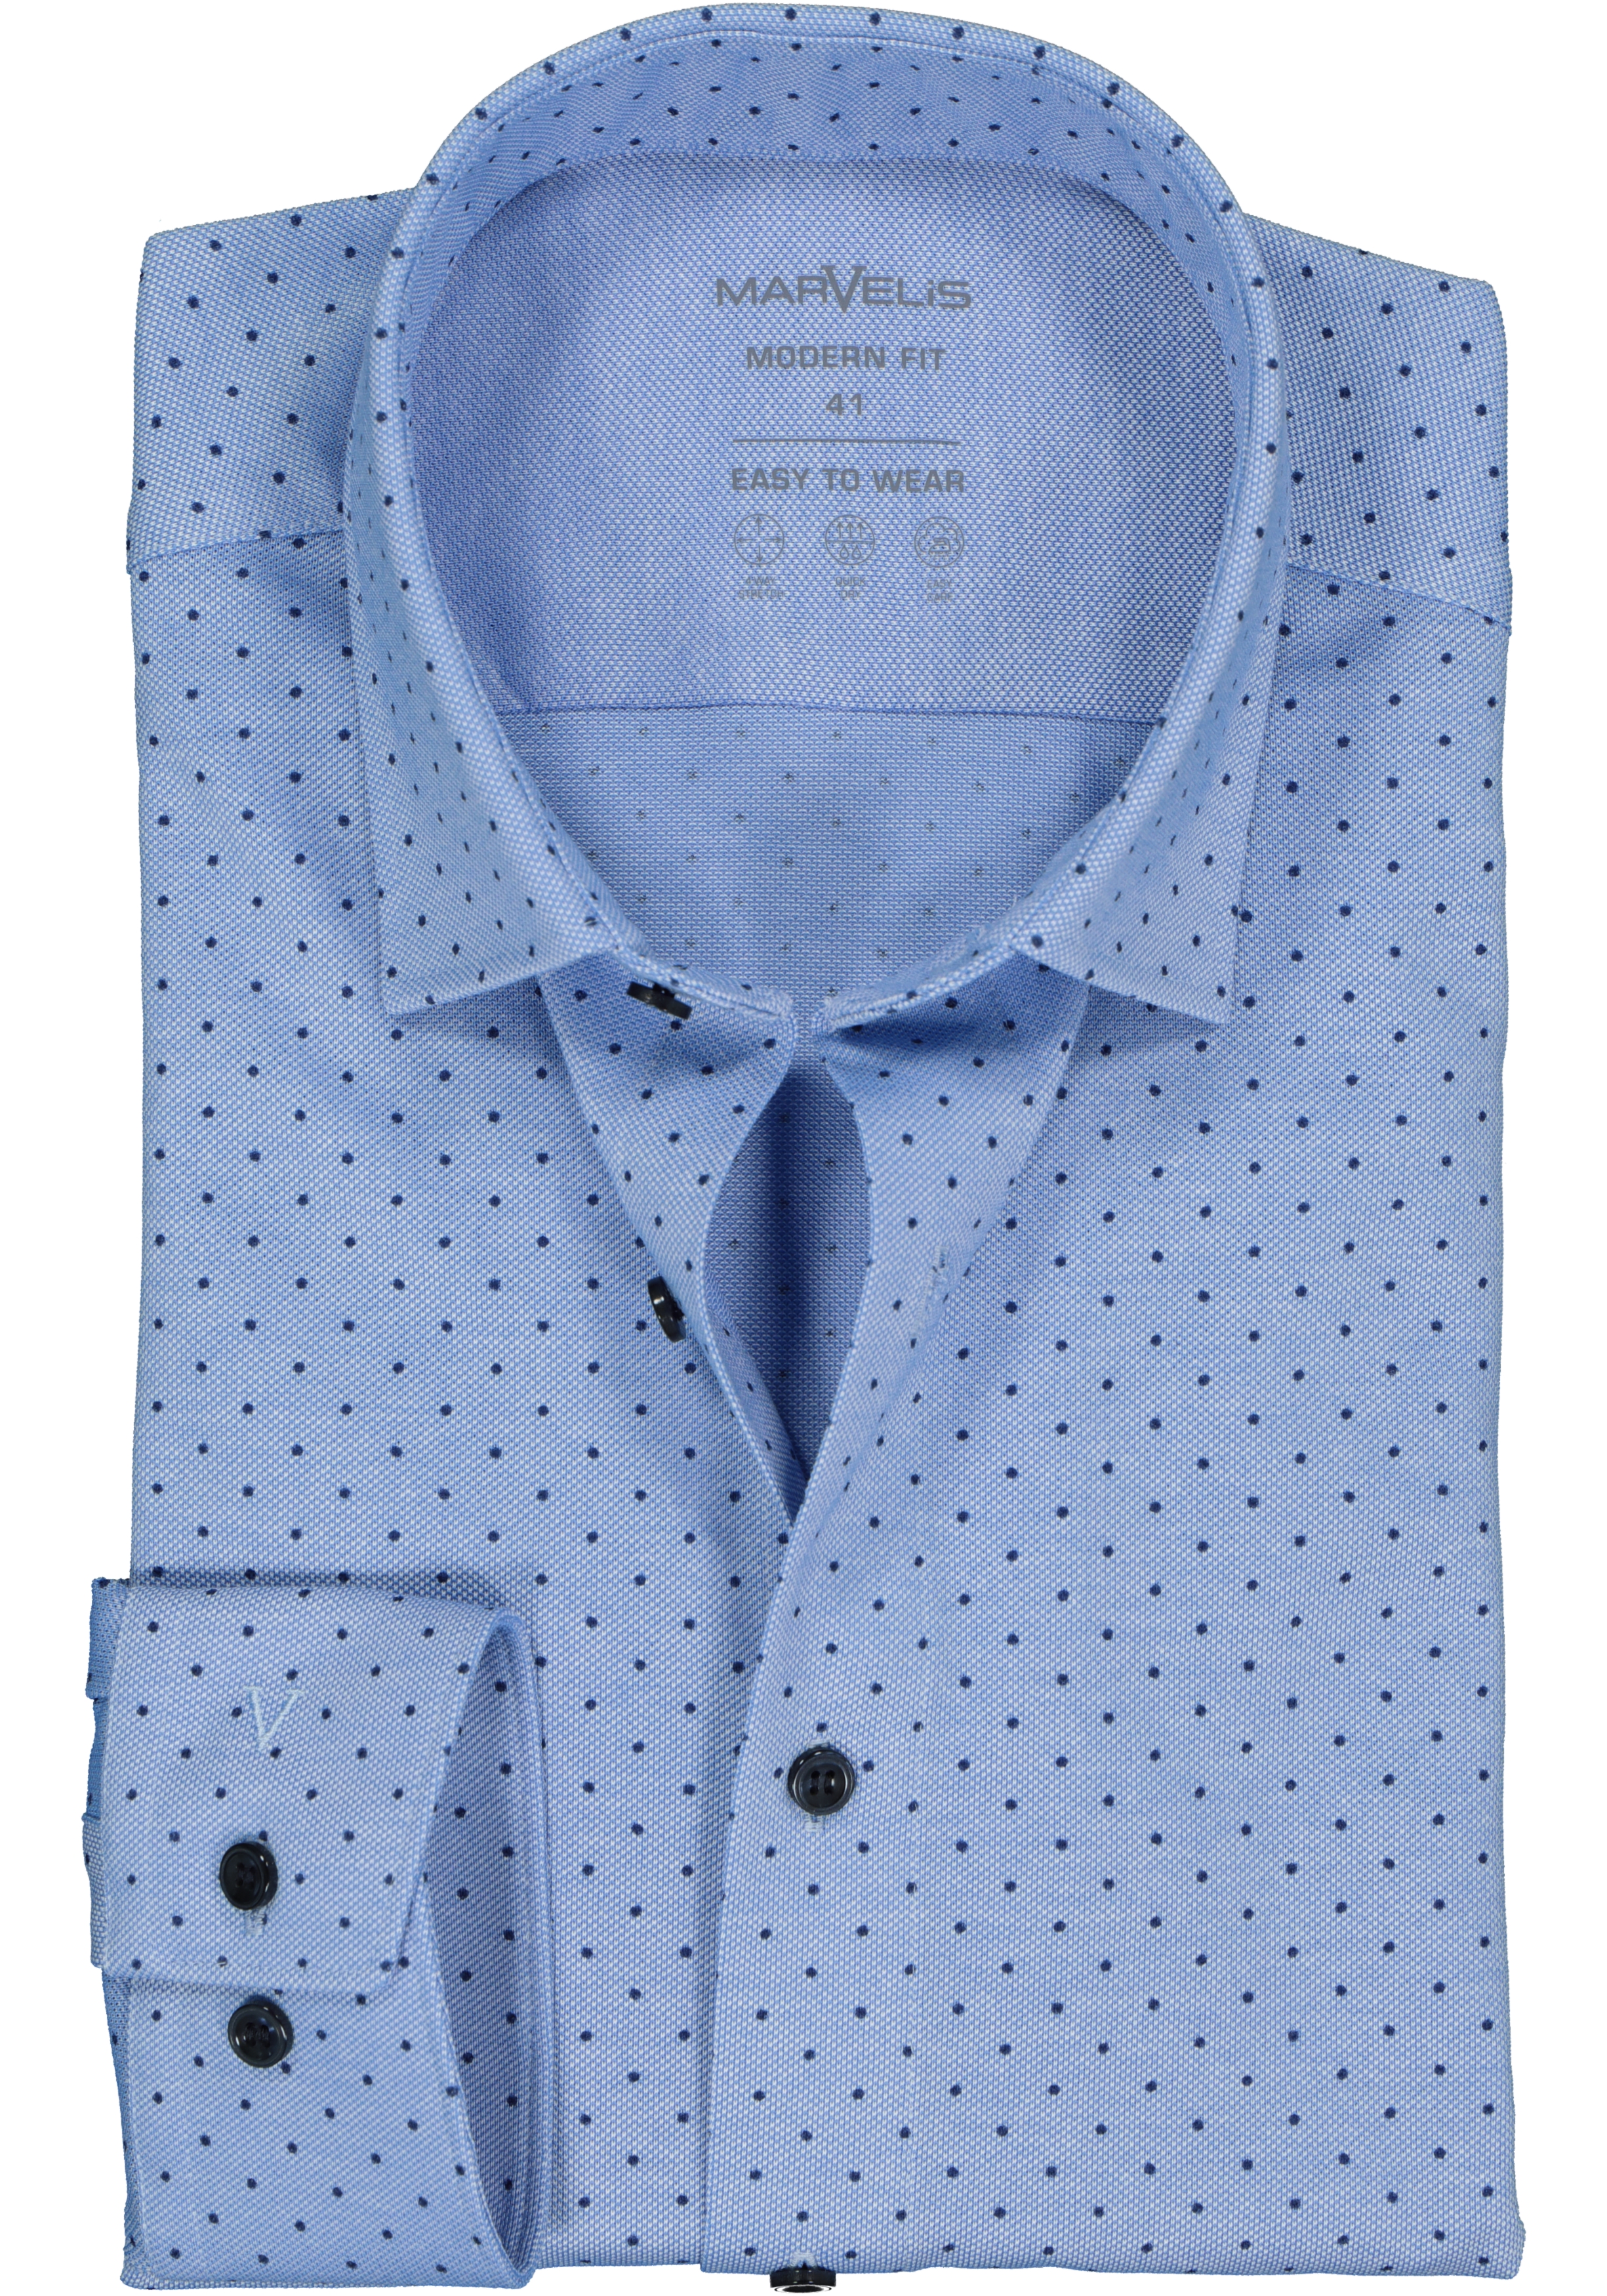 MARVELIS jersey modern fit overhemd, lichtblauw met donkerblauw gestipt tricot